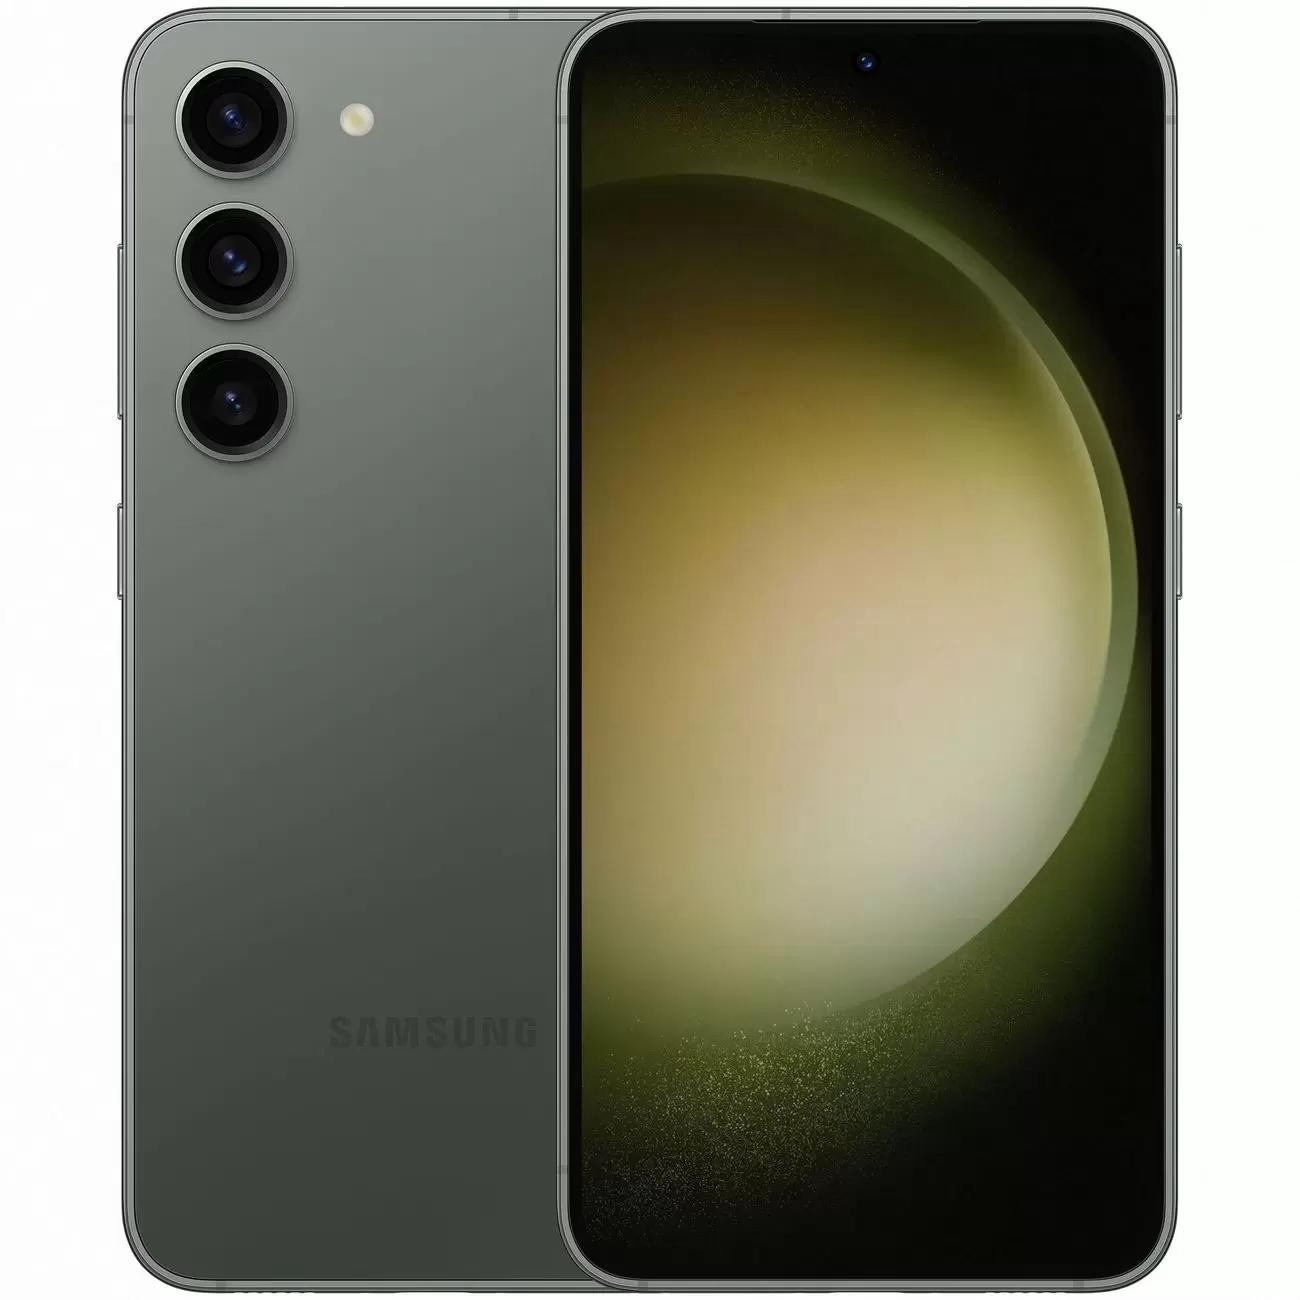 Купить смартфон samsung galaxy s23+ 8/256gb green S-Серия в официальном магазине Apple, Samsung, Xiaomi. iPixel.ru Купить, заказ, кредит, рассрочка, отзывы,  характеристики, цена,  фотографии, в подарок.